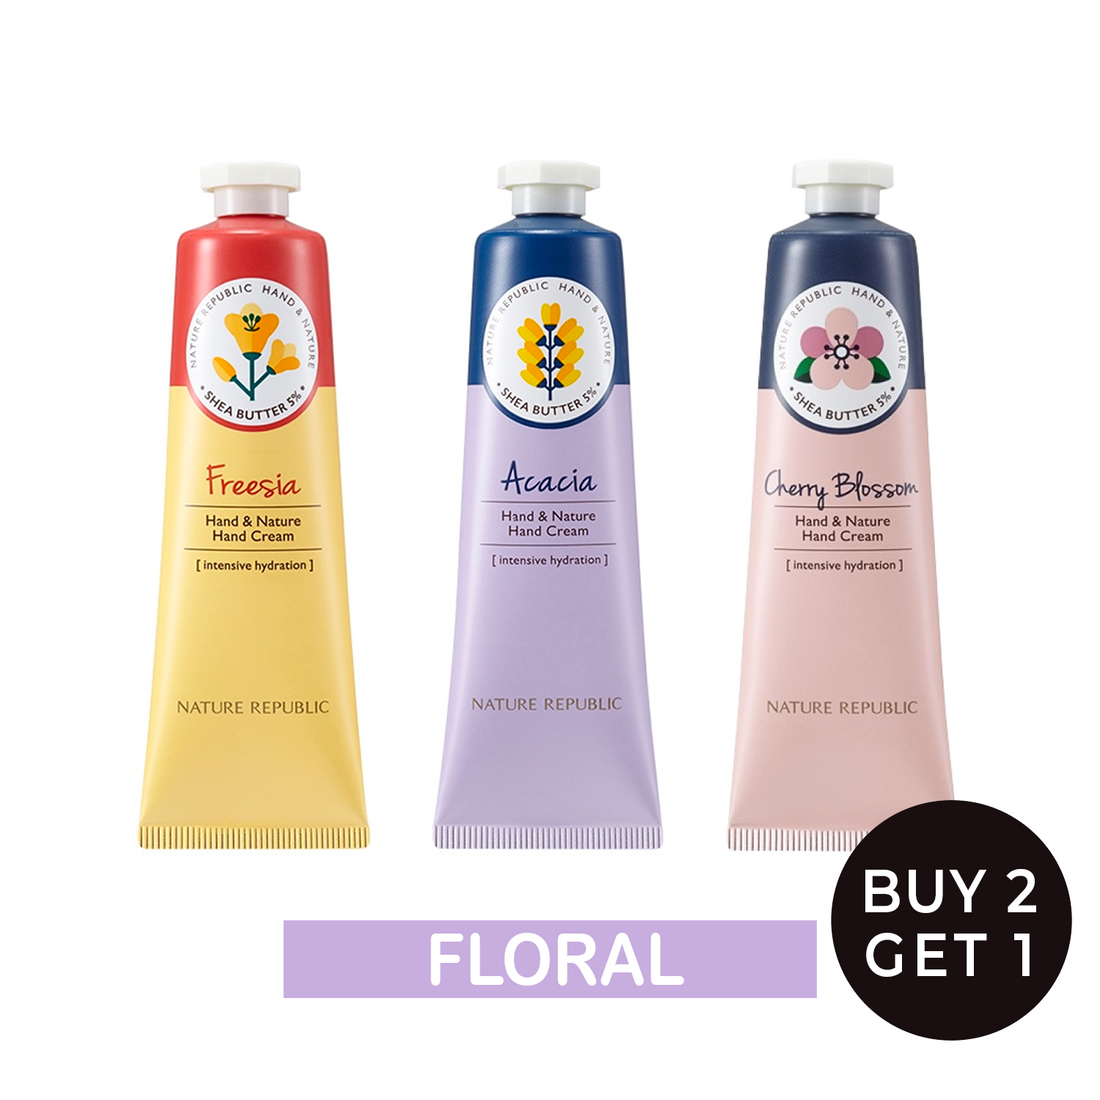 [Floral] Hand & Nature Hand Cream - Freesia, Acacia & Cherry Blossom